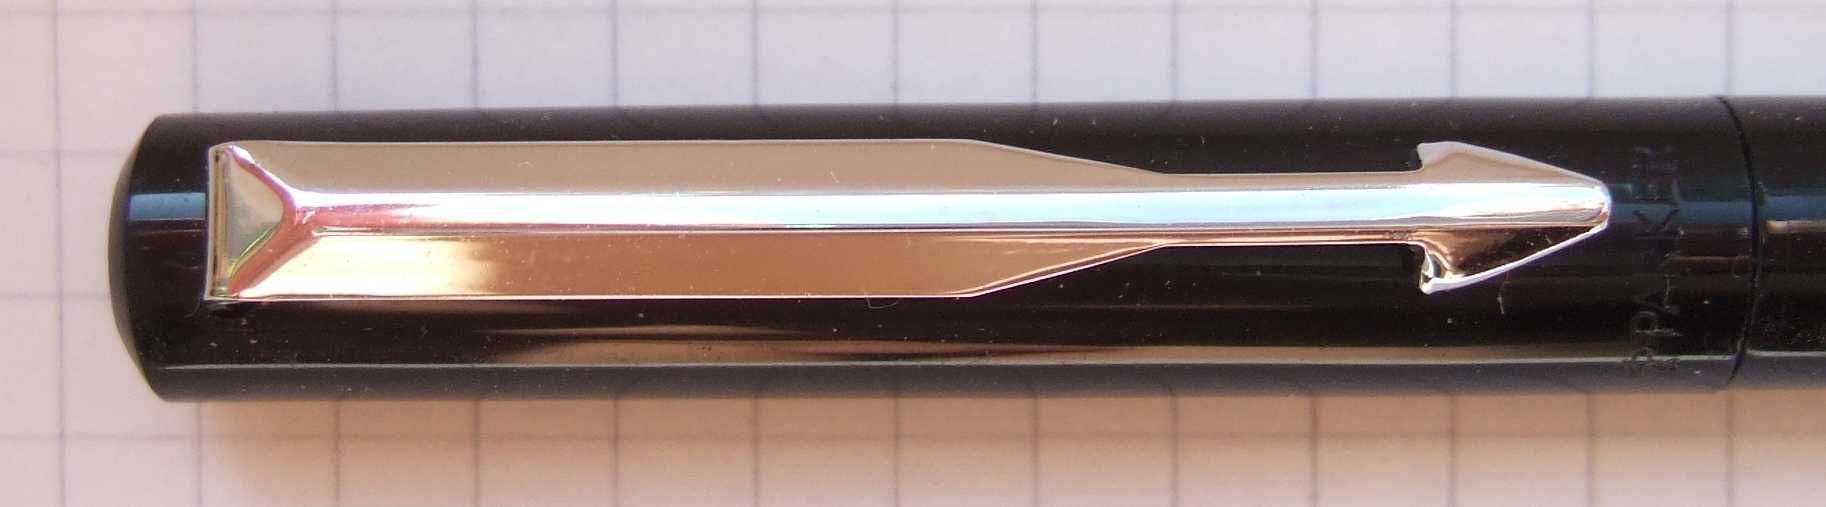 Нова ручка - роллер Паркер Вектор .США 2004 рік. Оригінал